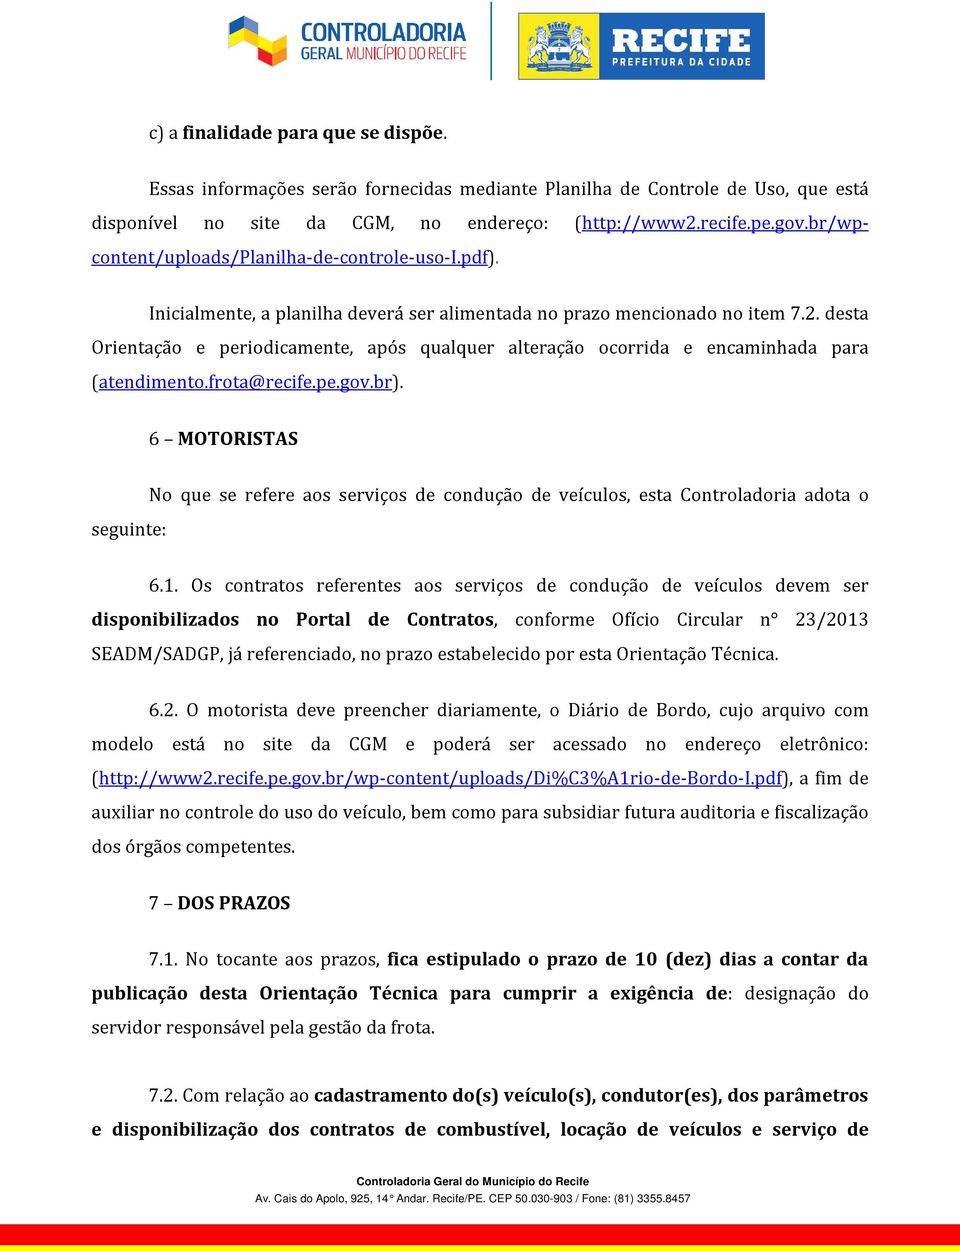 desta Orientação e periodicamente, após qualquer alteração ocorrida e encaminhada para (atendimento.frota@recife.pe.gov.br).